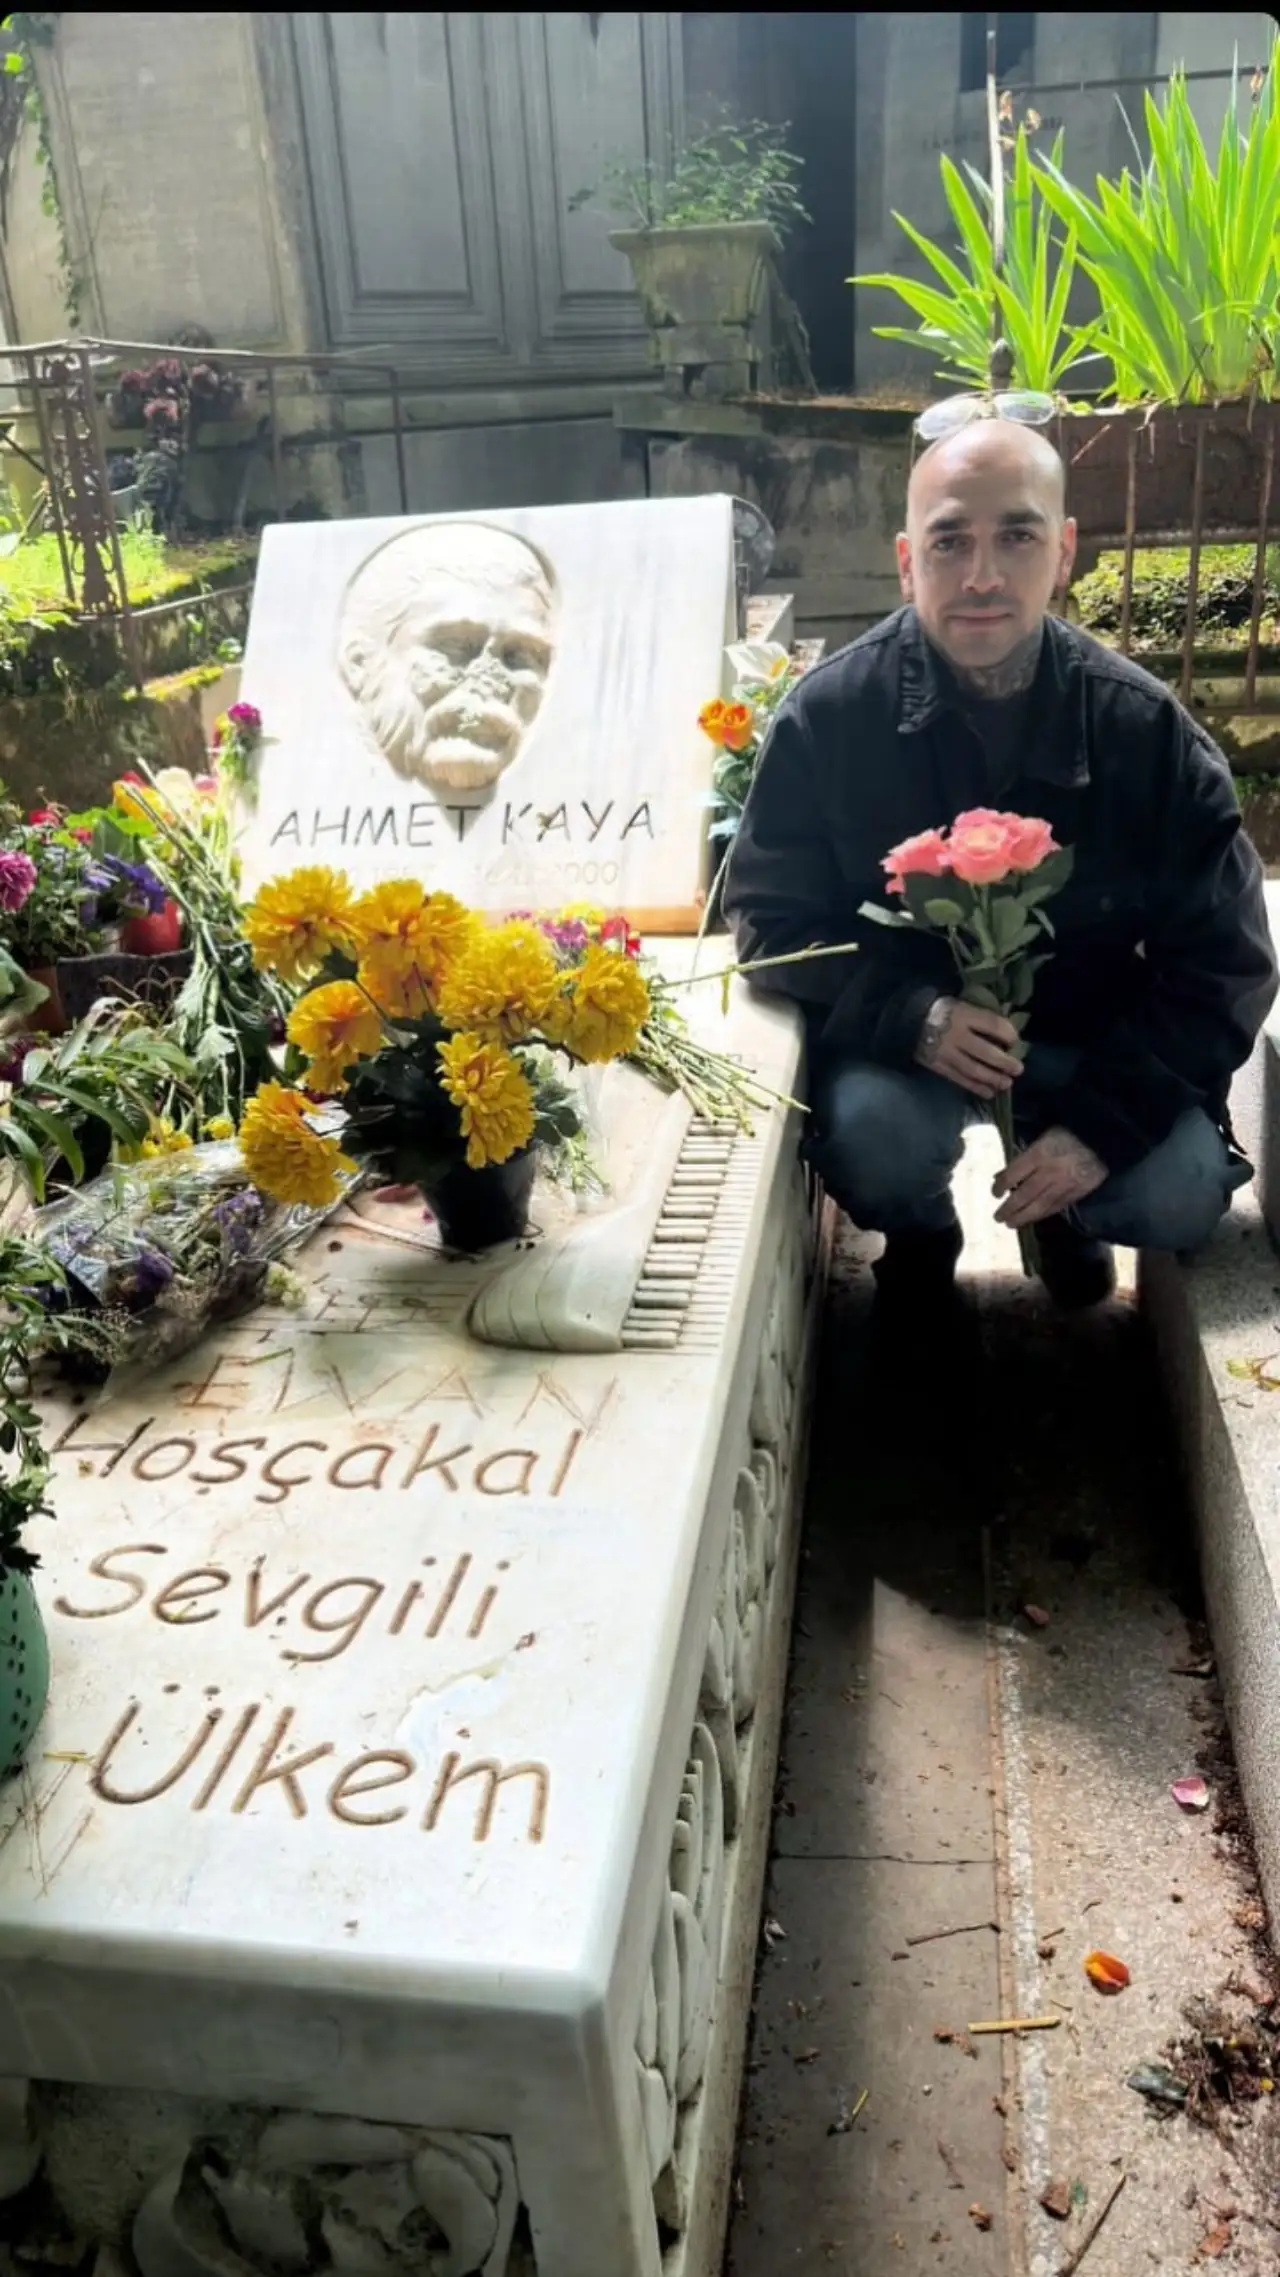 Ünlü Rapçi  Ahmet Kaya'nın Mezarını Ziyaret Etti